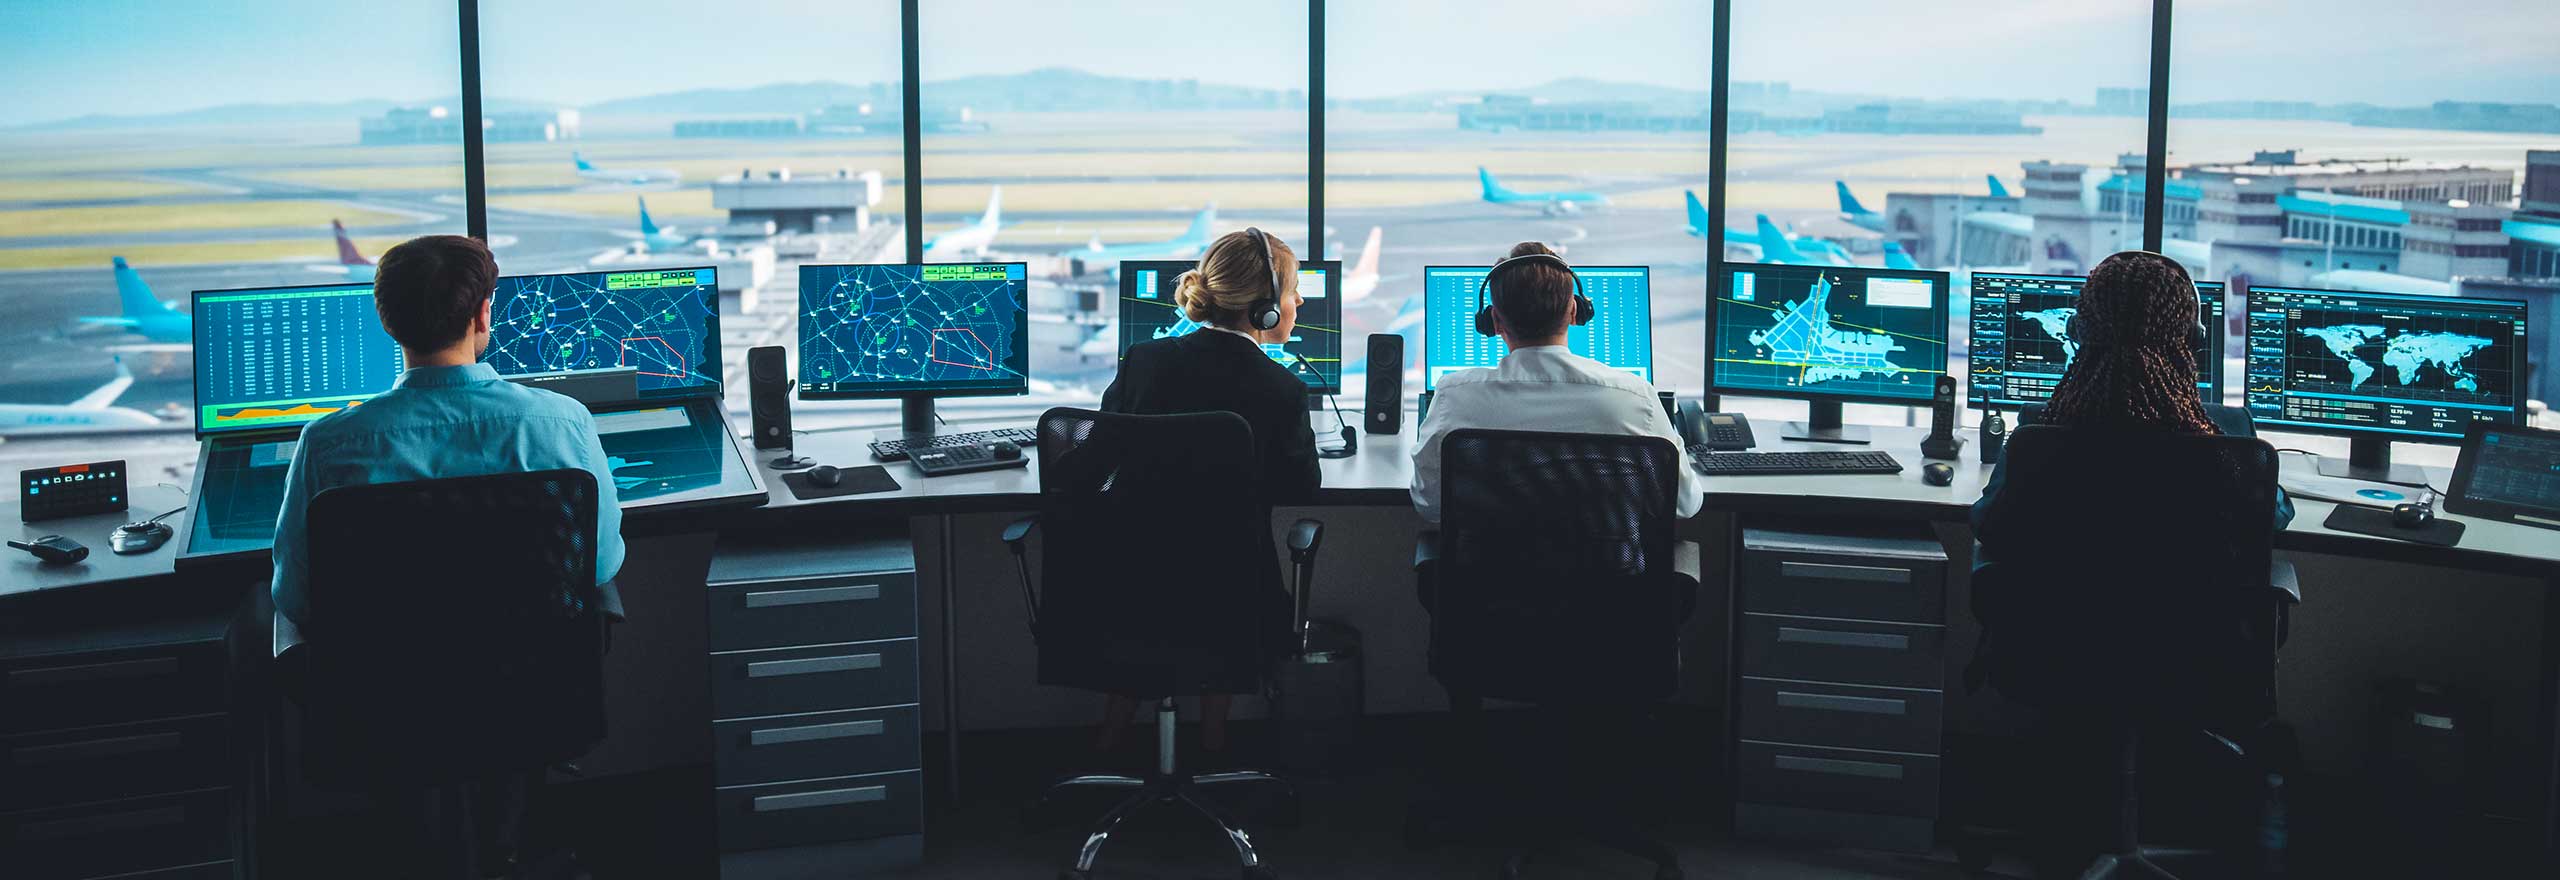 Controladores de tráfego aéreo gerenciando o tráfego aéreo